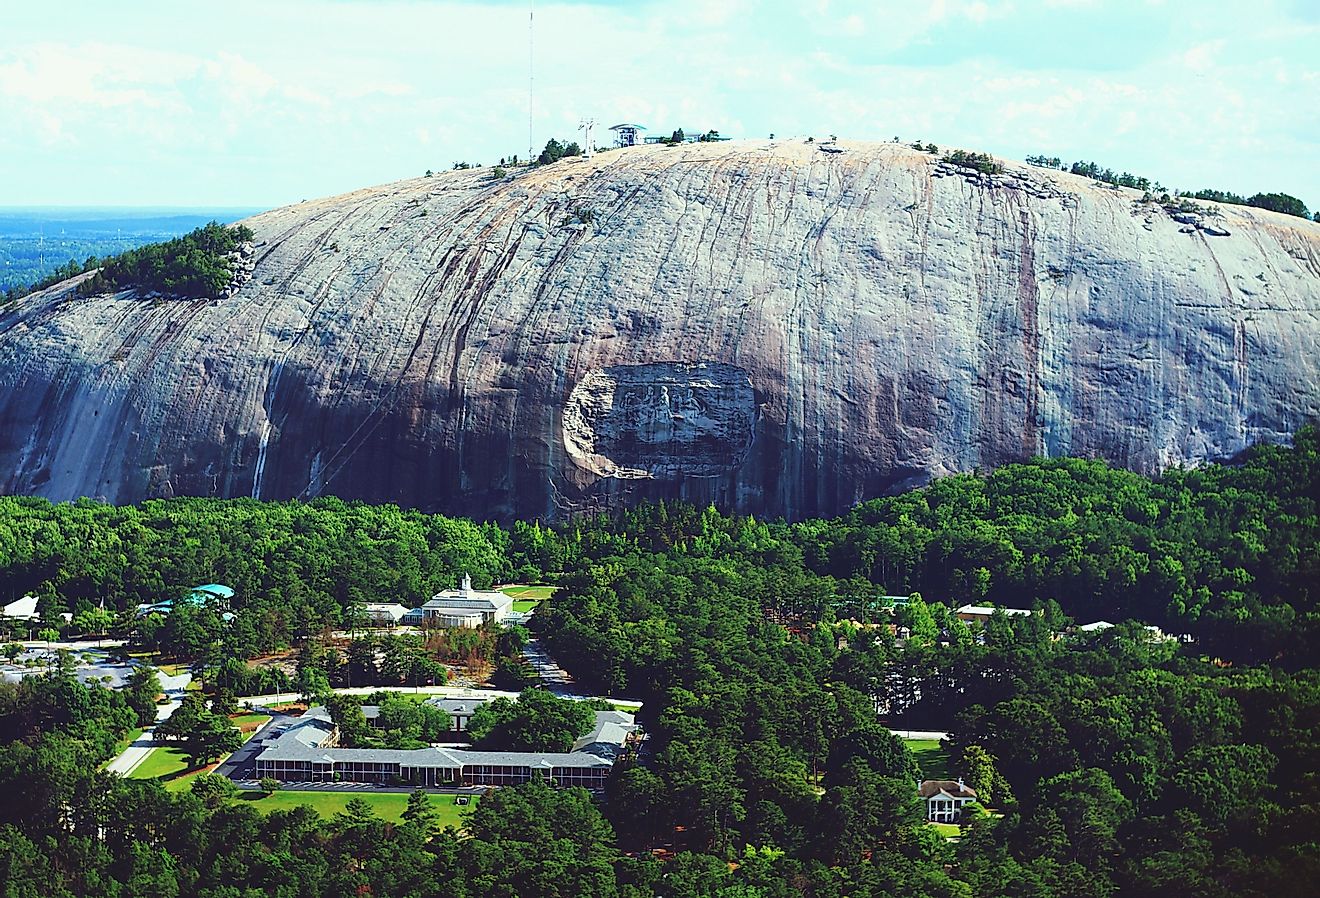 Stone Mountain, Georgia. Image credit Brett Barnhill via Shutterstock